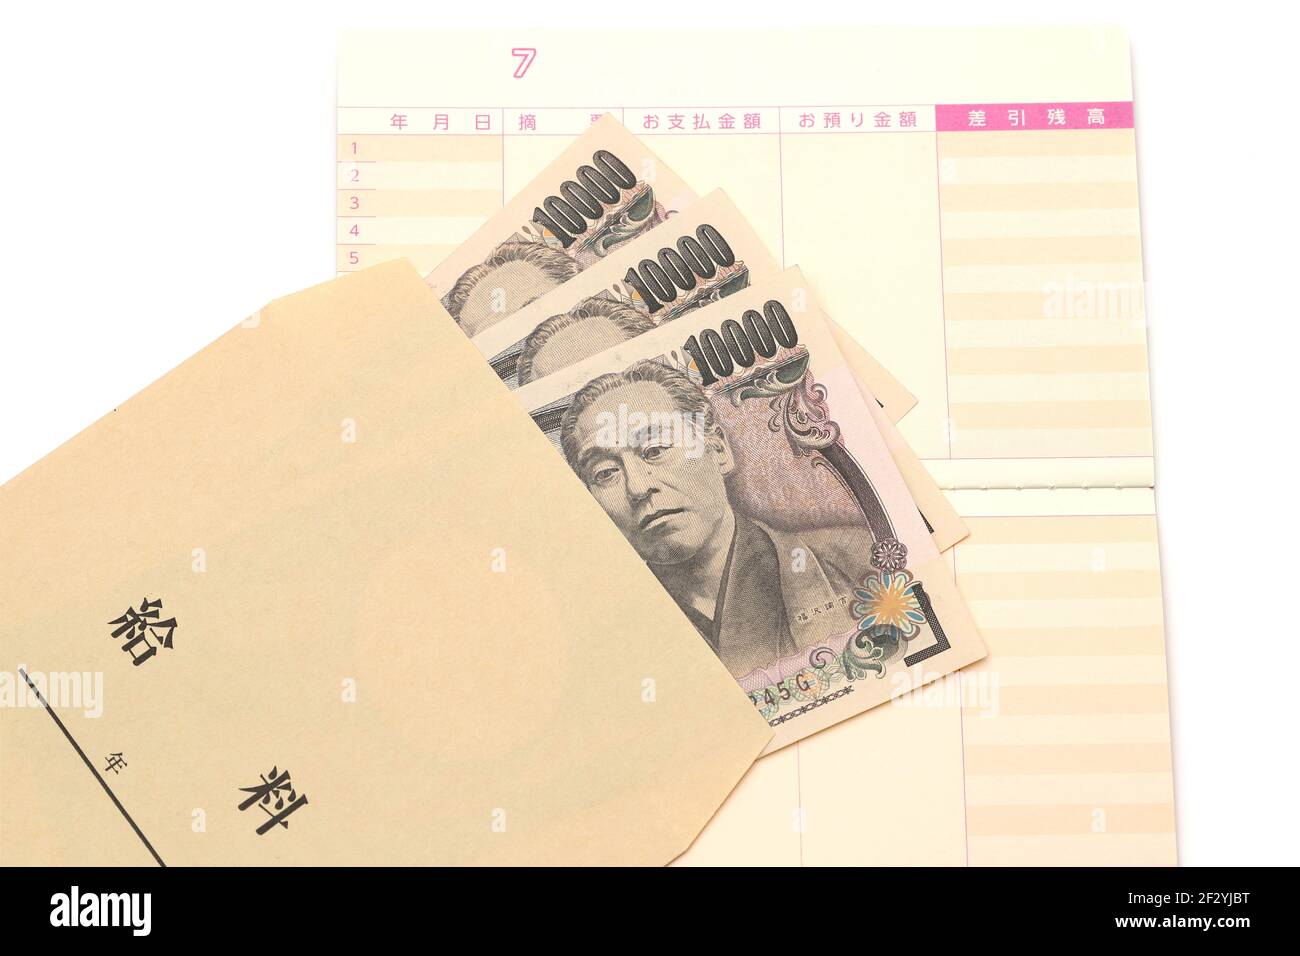 Giapponese diecimila yen in un sacchetto di stipendio su sfondo bianco, traduzione: Anno, mese, giorno, pagamento, deposito, saldo, stipendio. Foto Stock